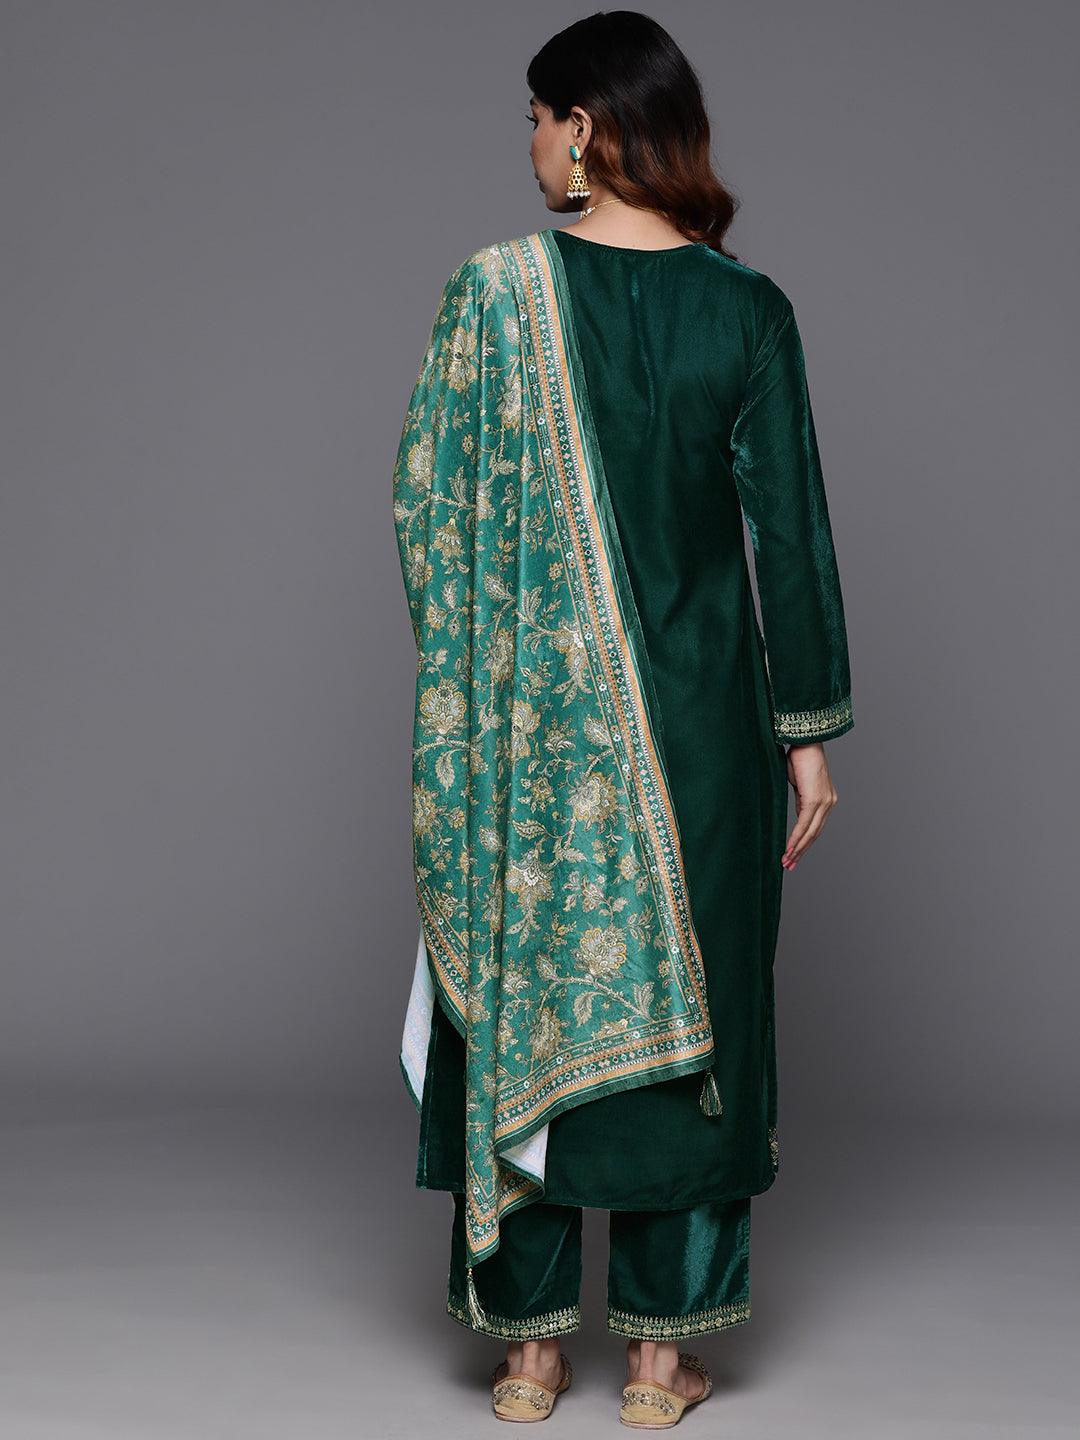 Green Yoke Design Velvet Straight Suit With Dupatta - Libas